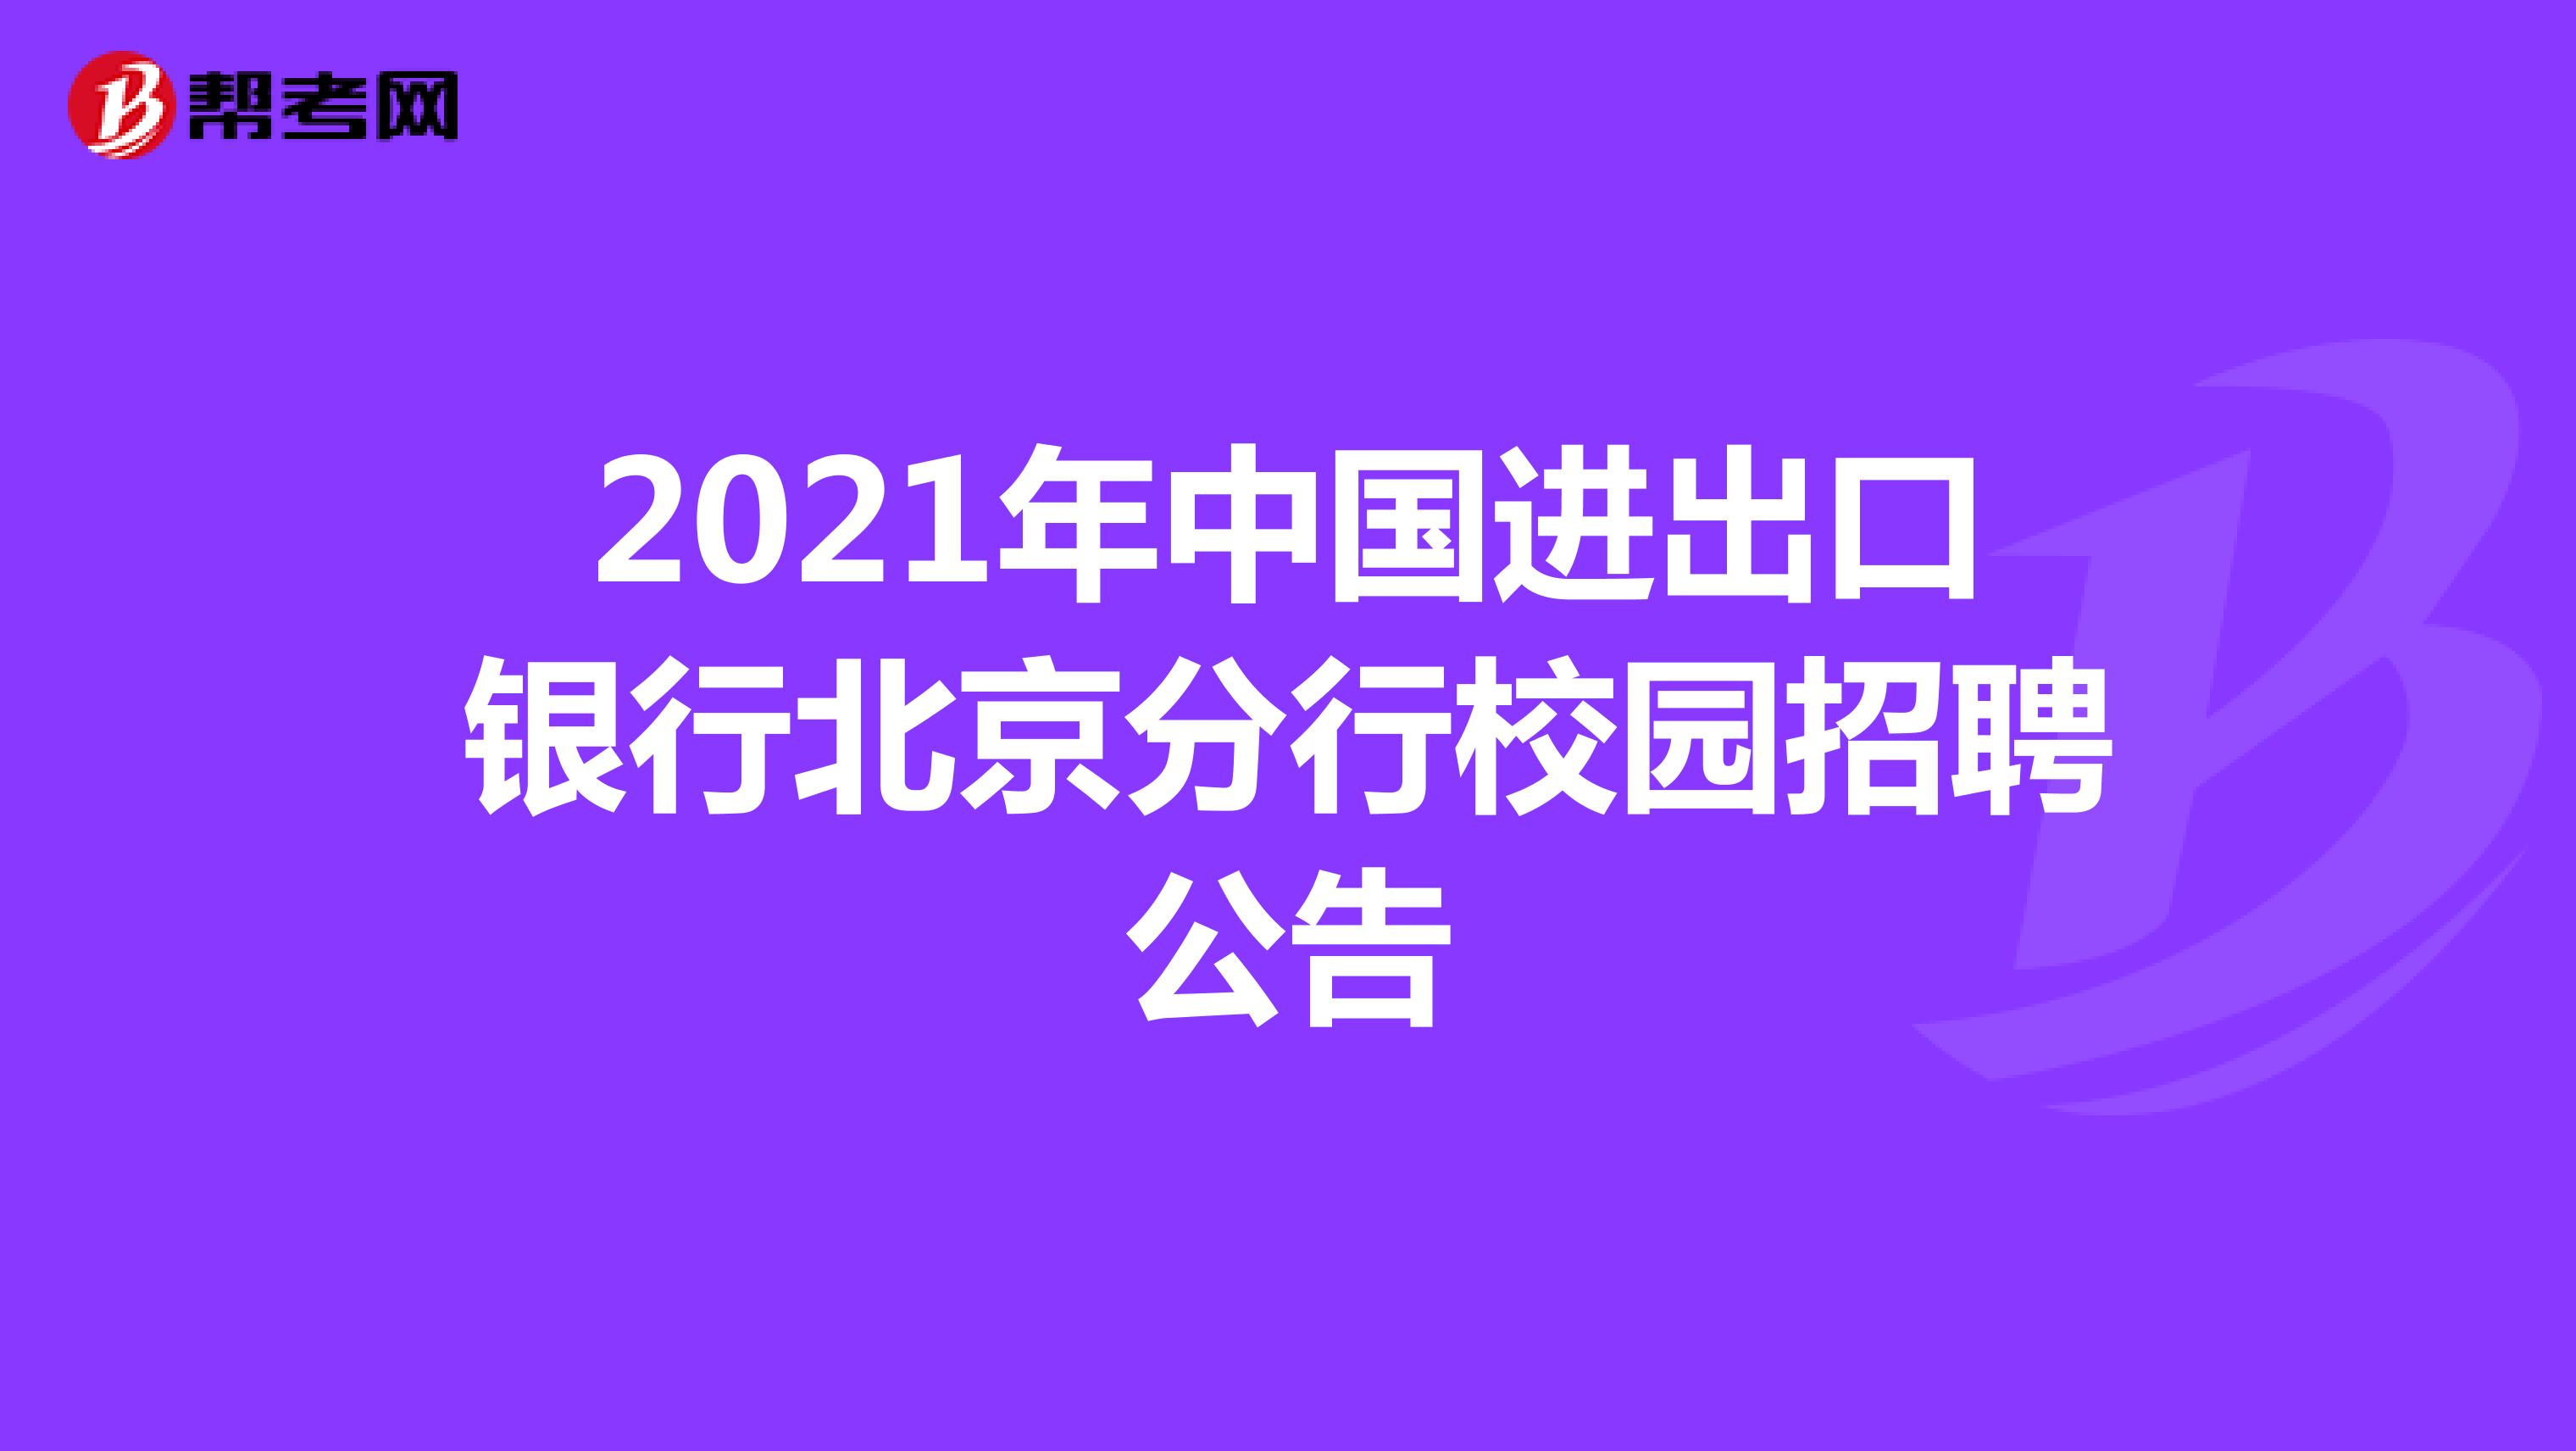 2021年中国进出口银行北京分行校园招聘公告